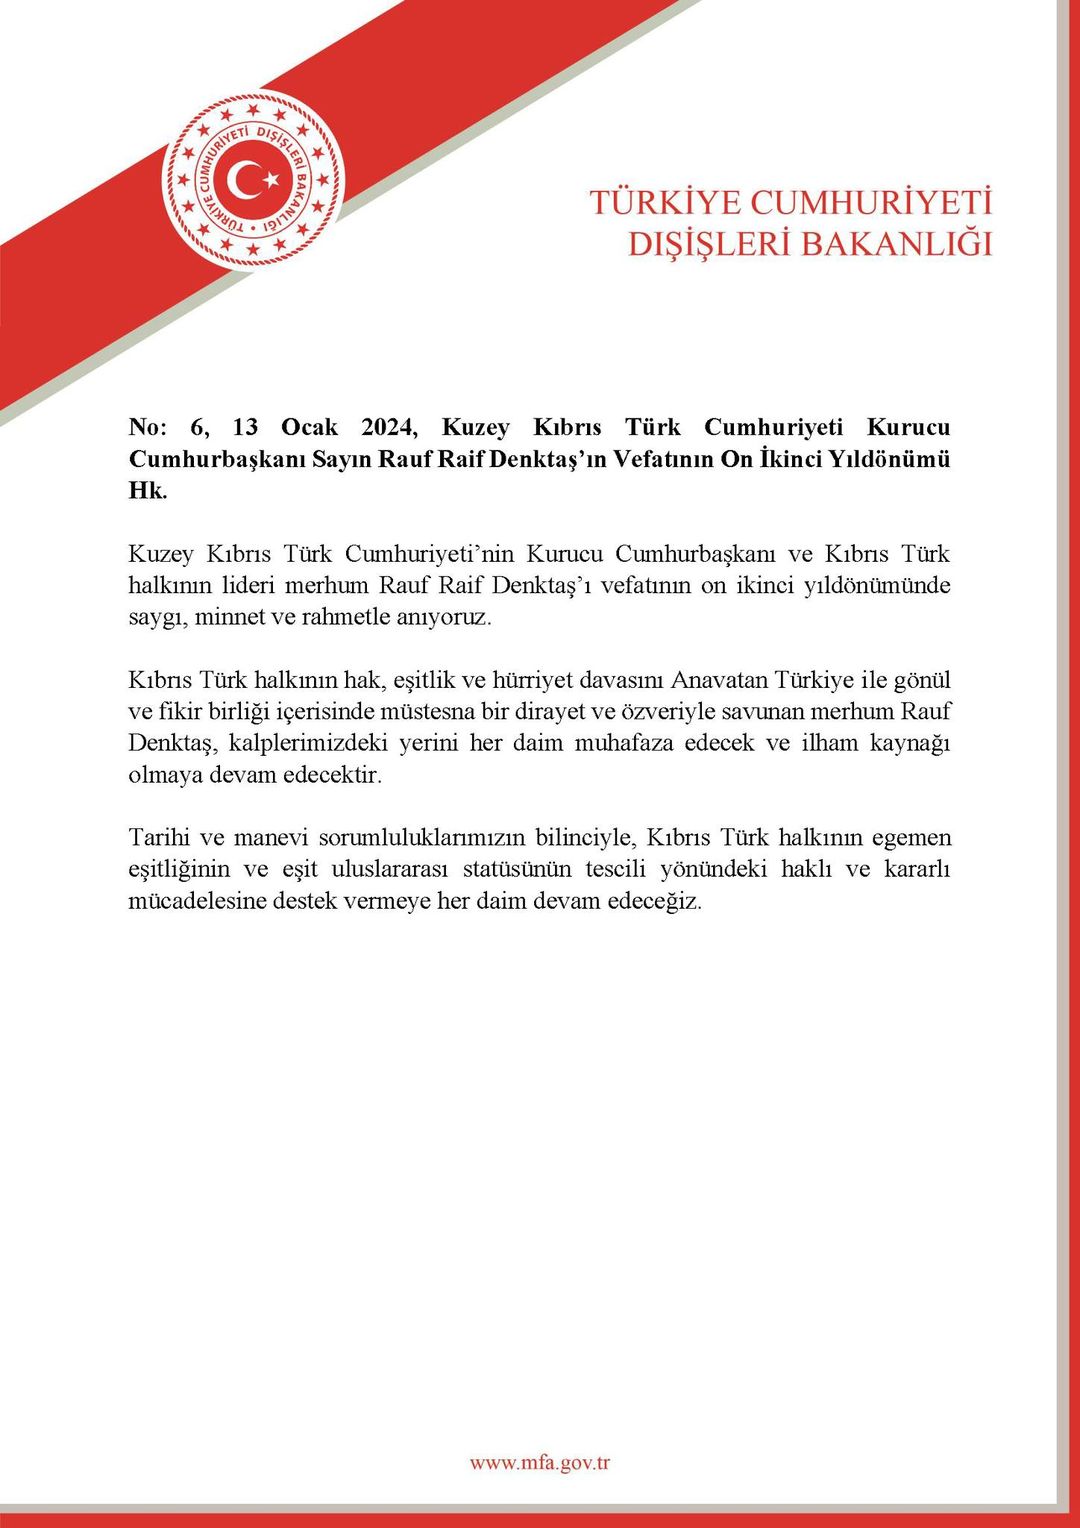 KKTC'nin kurucu Cumhurbaşkanı Rauf Denktaş'ın vefatının 12. yılında anma mesajı yayımlandı